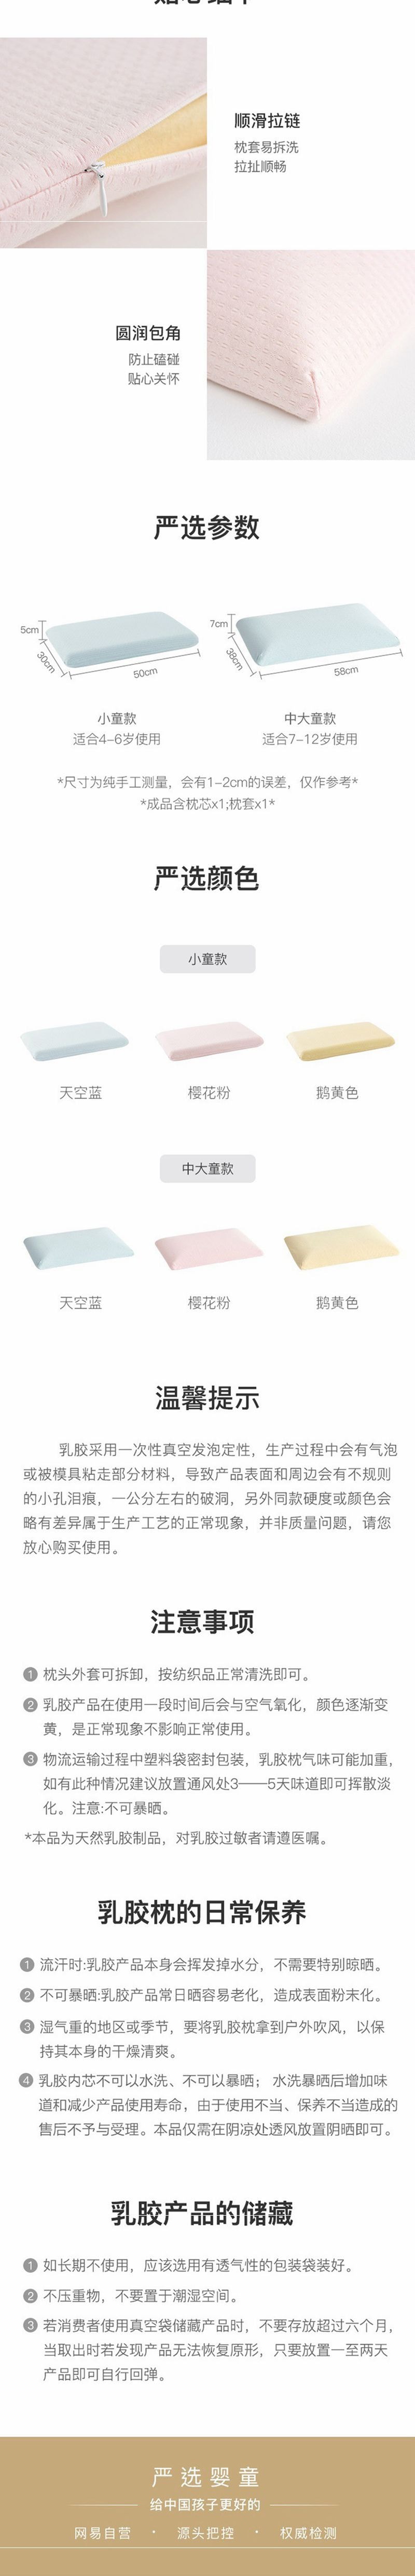 网易严选 儿童天然乳胶面包枕 (泰国进口纯乳胶) 蓝色-中大童款(38x58cm)